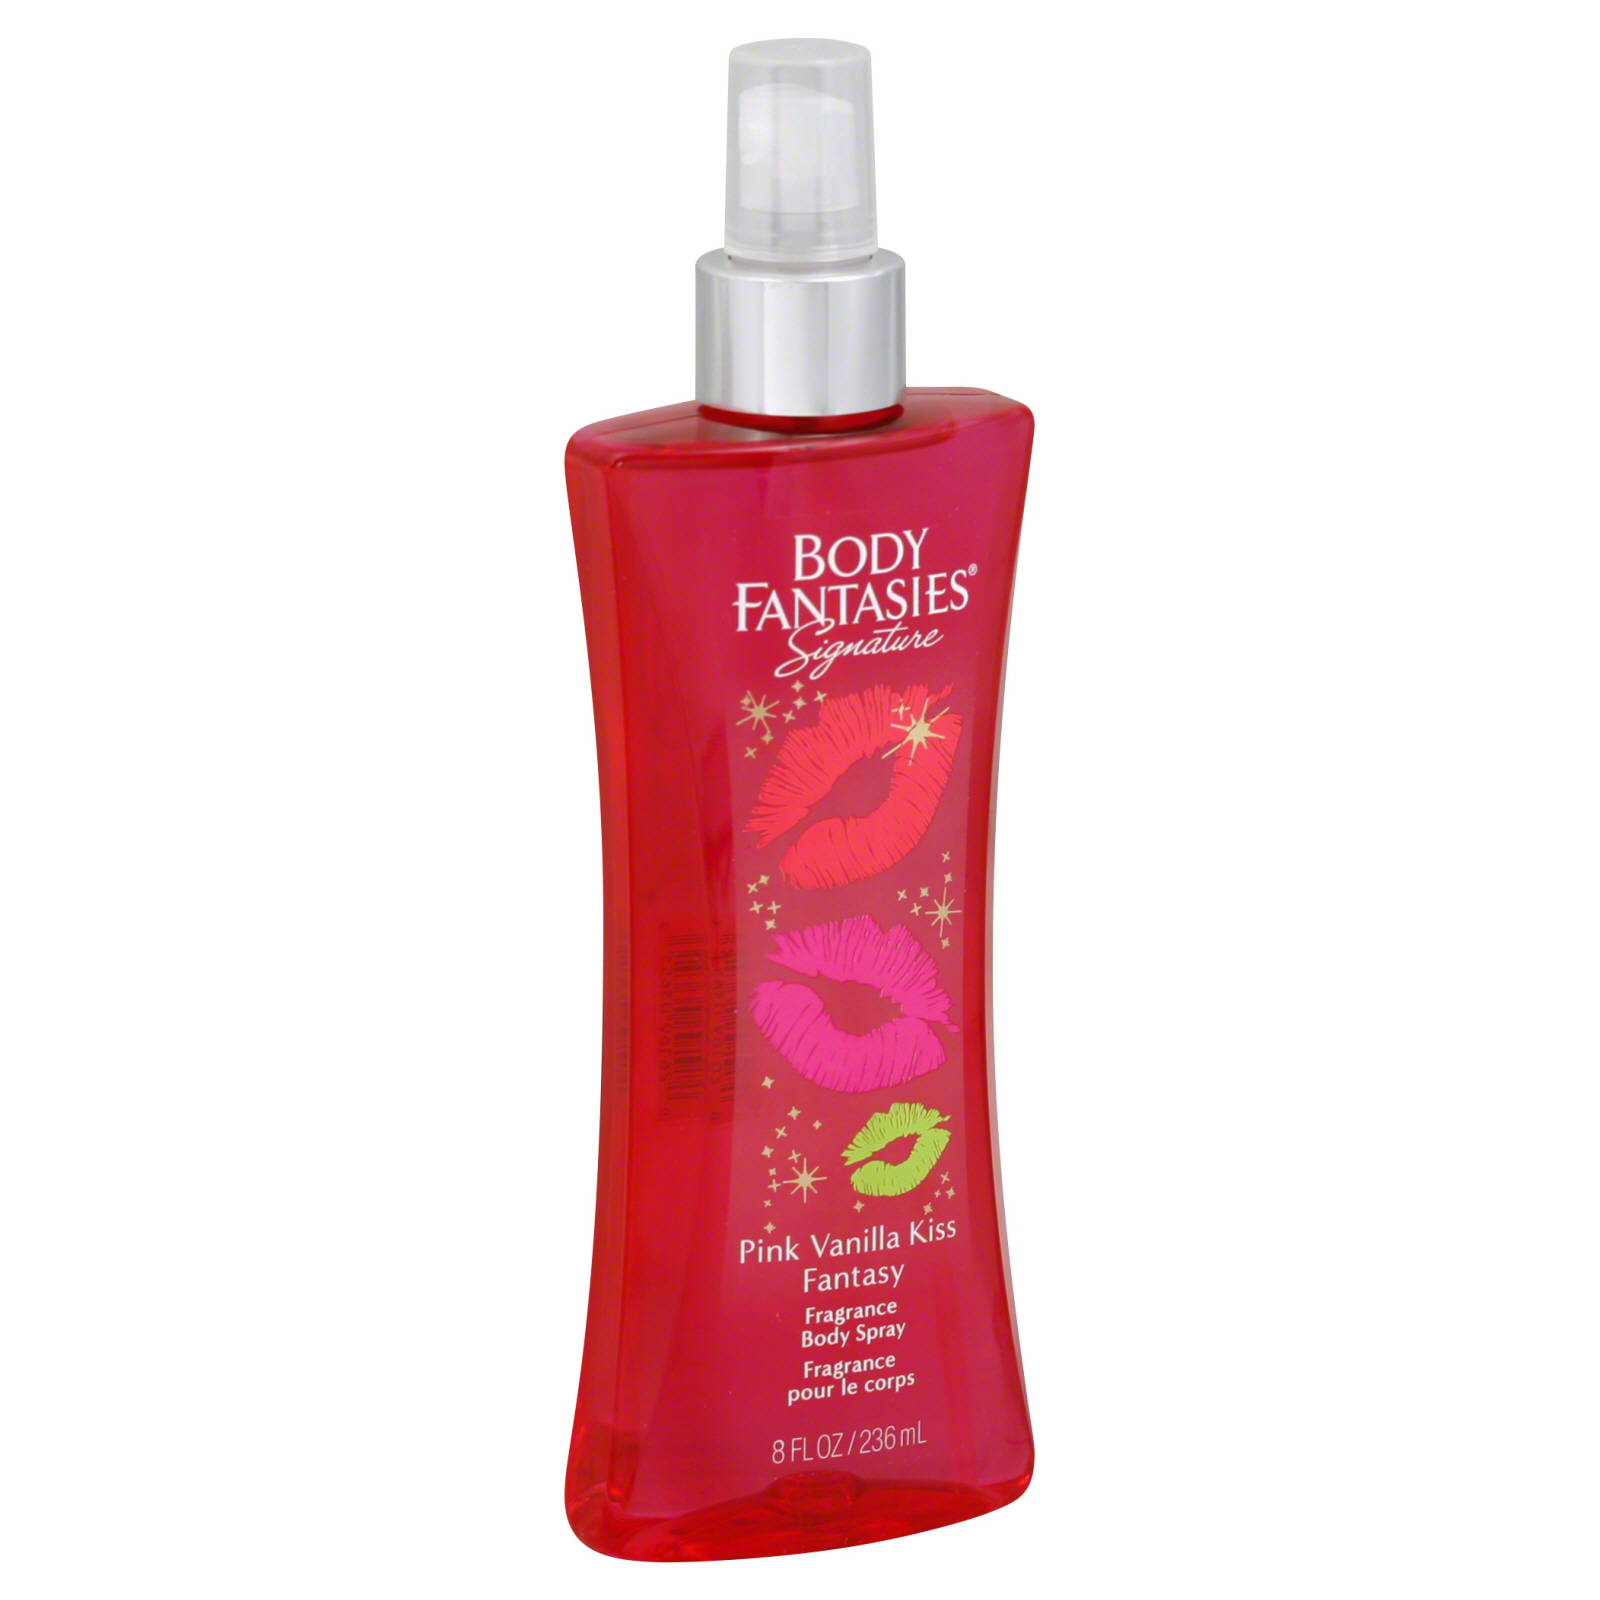 Body Fantasies Fragrance Body Spray, Pink Vanilla Kiss Fantasy, 8 fl oz (236 ml)